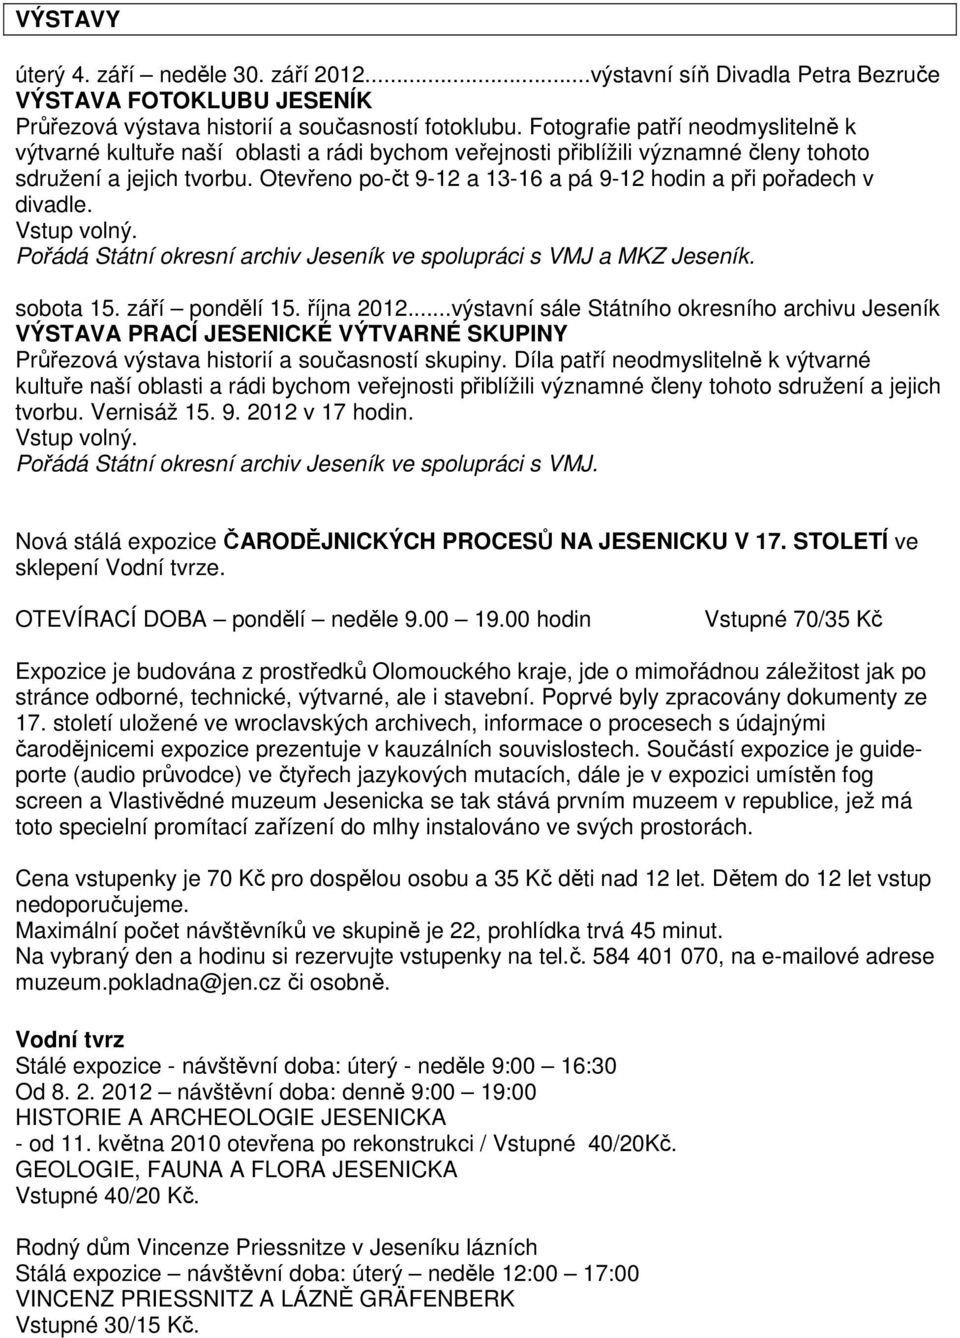 Otevřeno po-čt 9-12 a 13-16 a pá 9-12 hodin a při pořadech v divadle. Pořádá Státní okresní archiv Jeseník ve spolupráci s VMJ a MKZ Jeseník. sobota 15. září pondělí 15. října 2012.